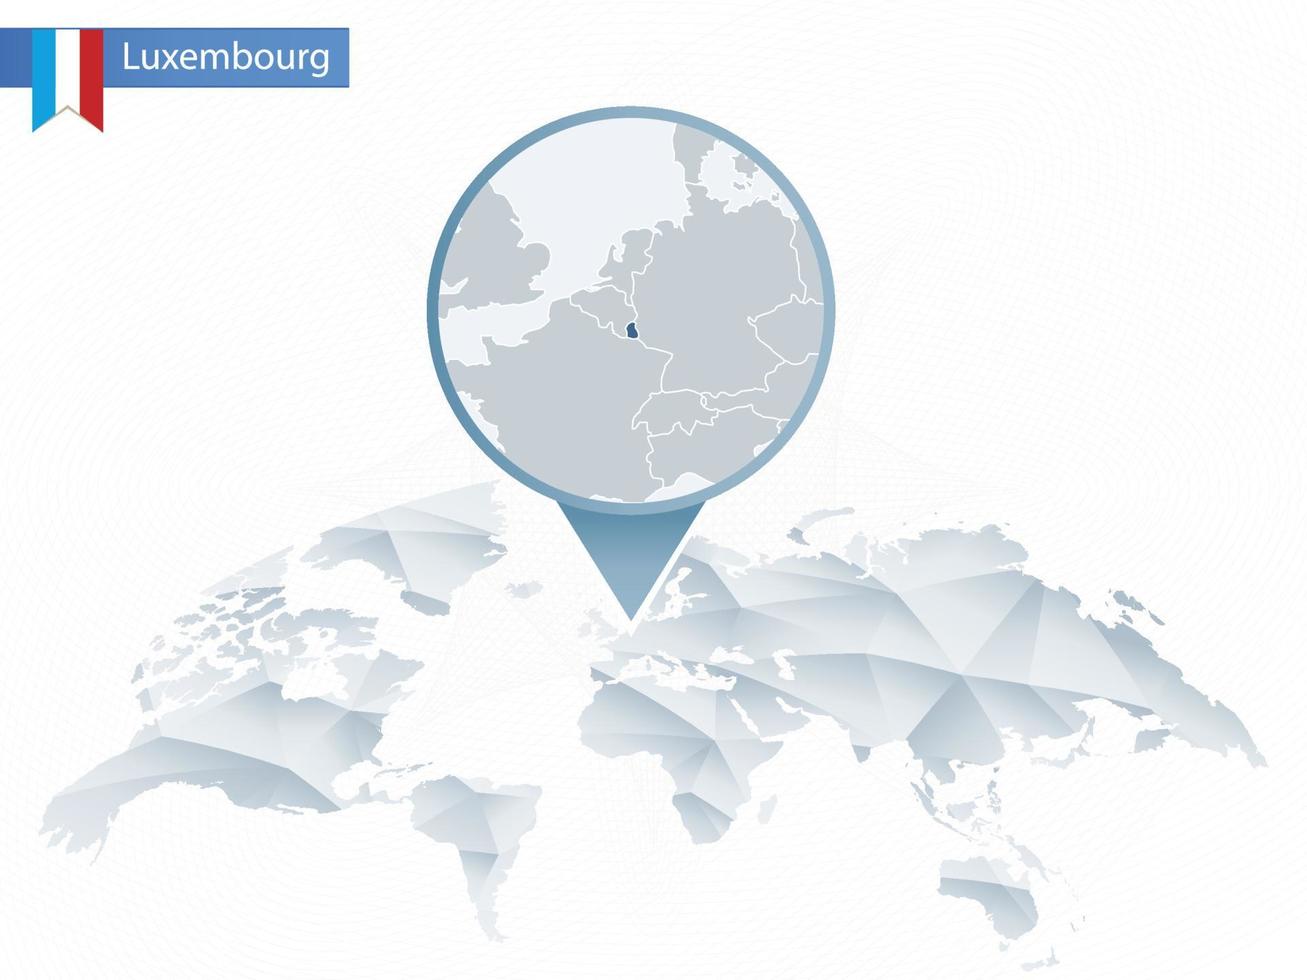 mappa del mondo arrotondata astratta con mappa dettagliata del lussemburgo appuntata. vettore